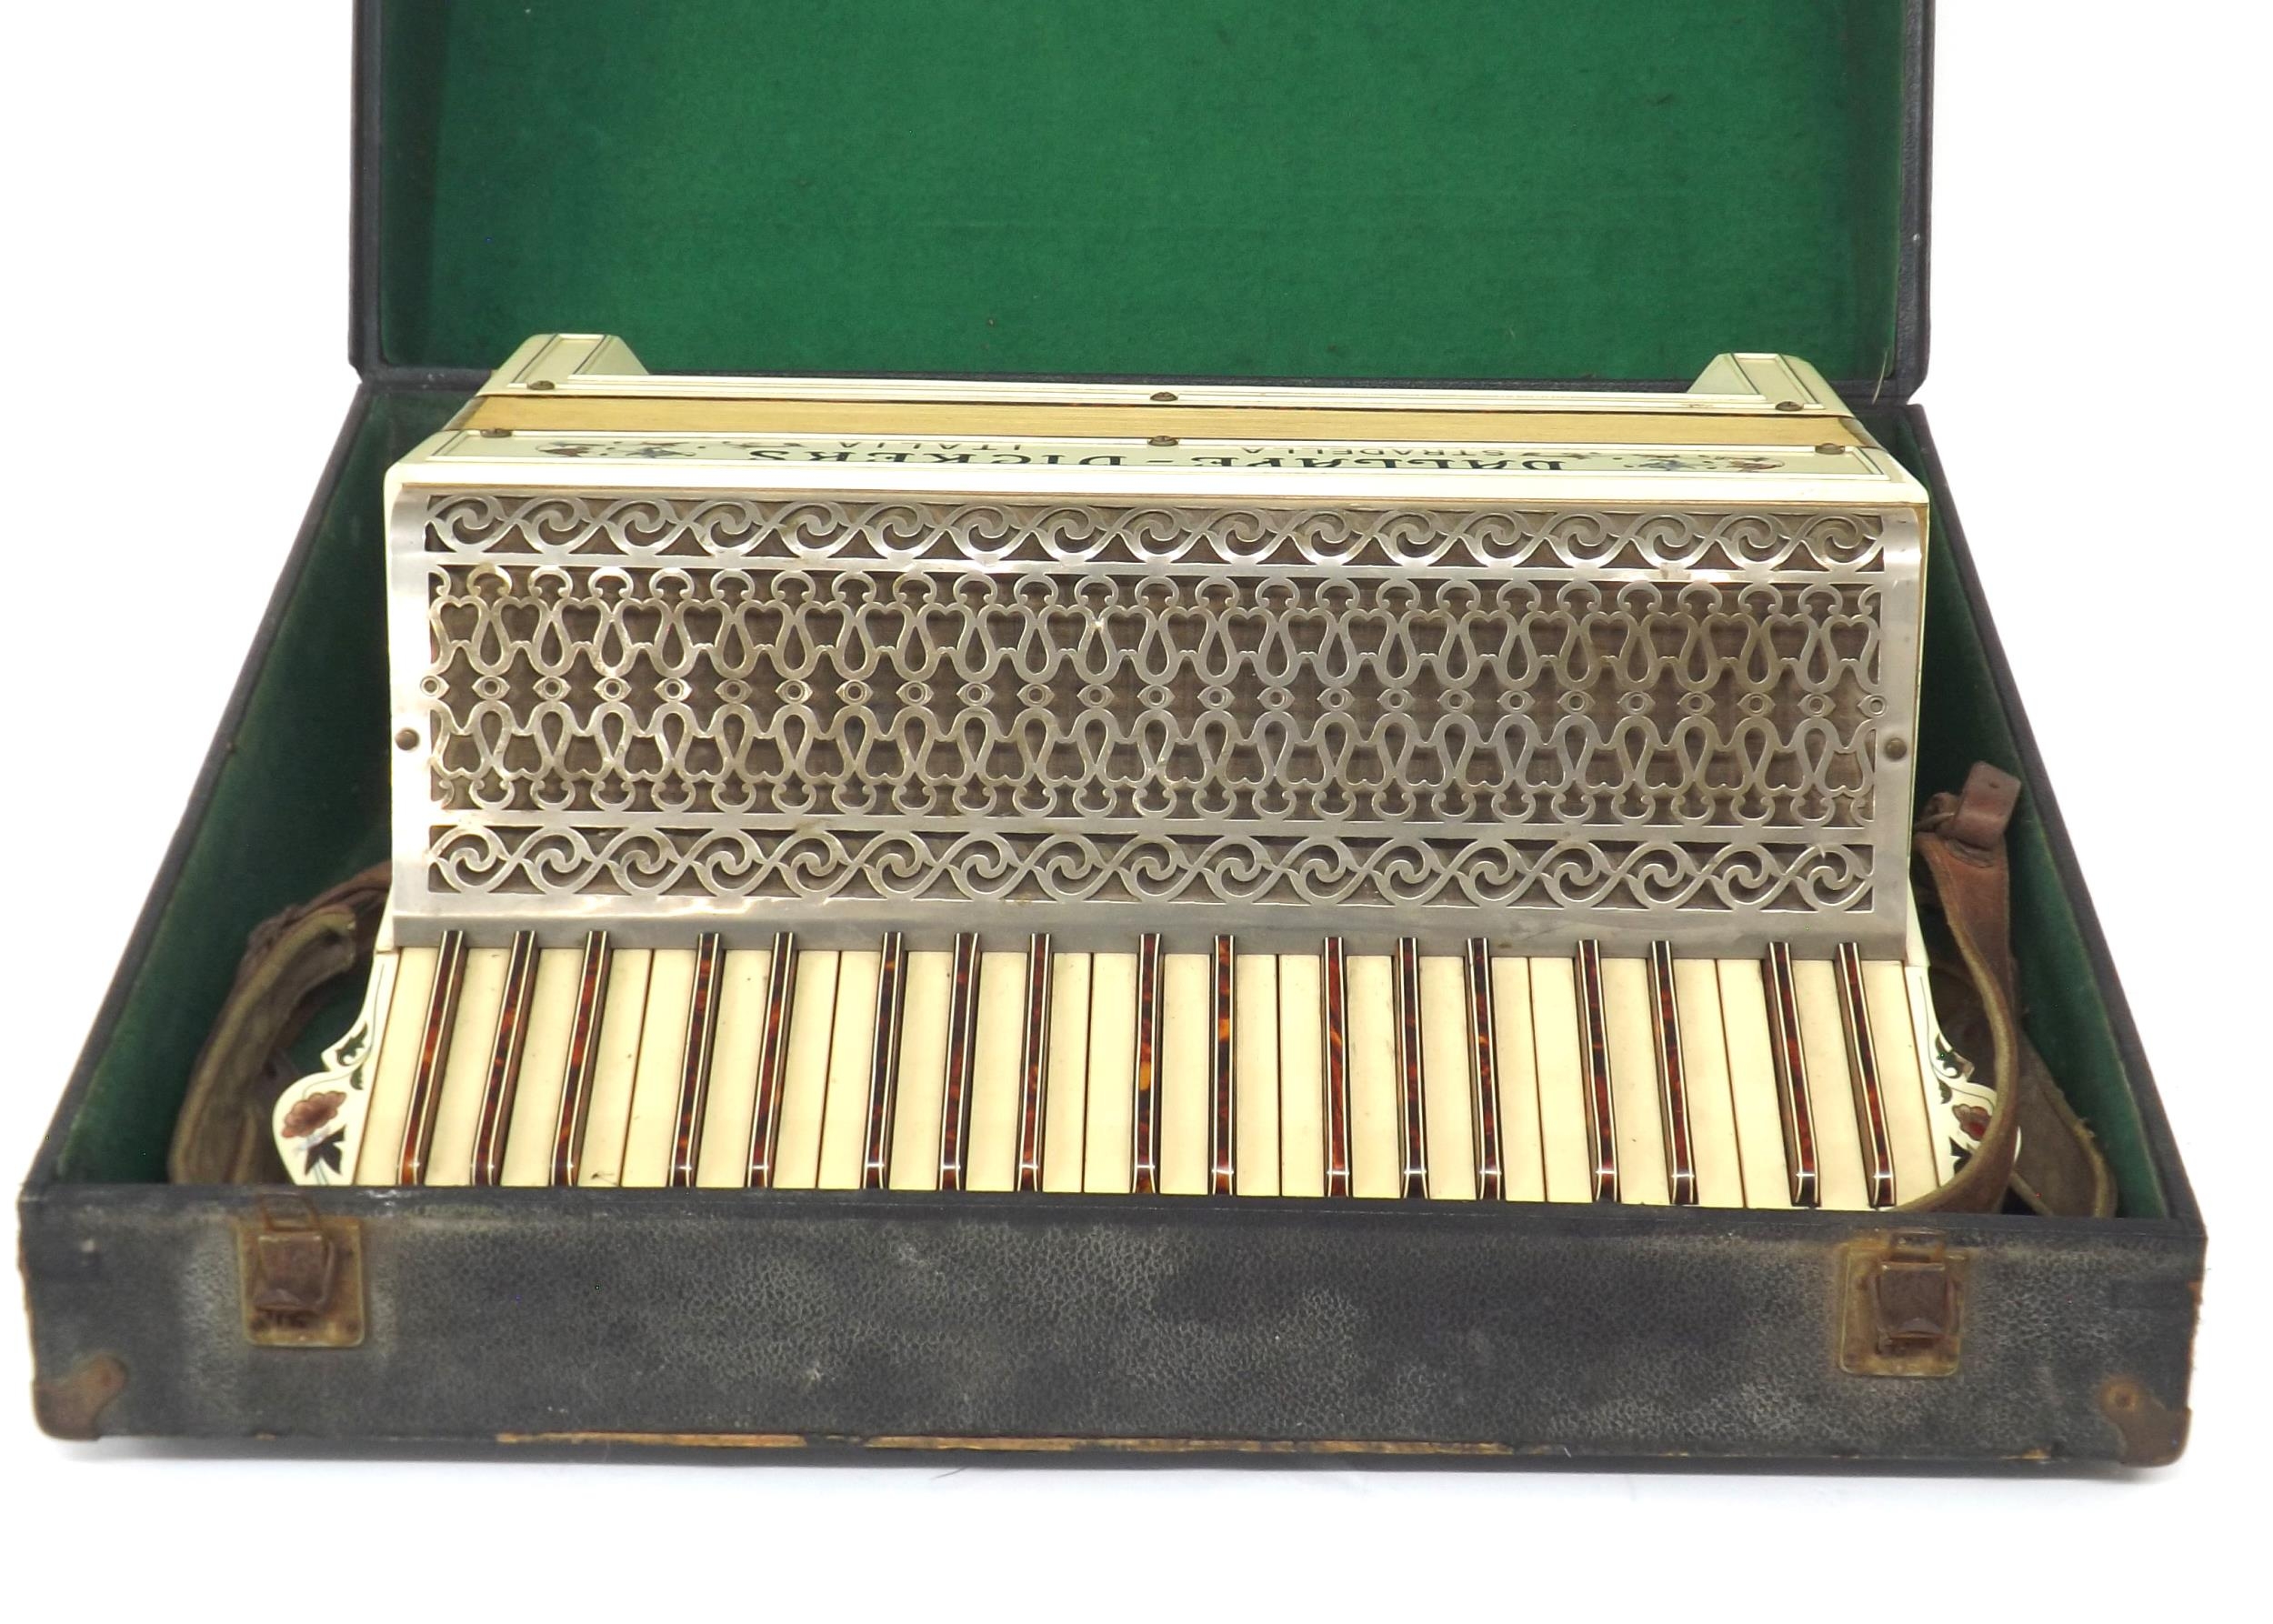 Dallape Vickers Stradella 120 bass piano accordion, white finish, case - Image 4 of 4